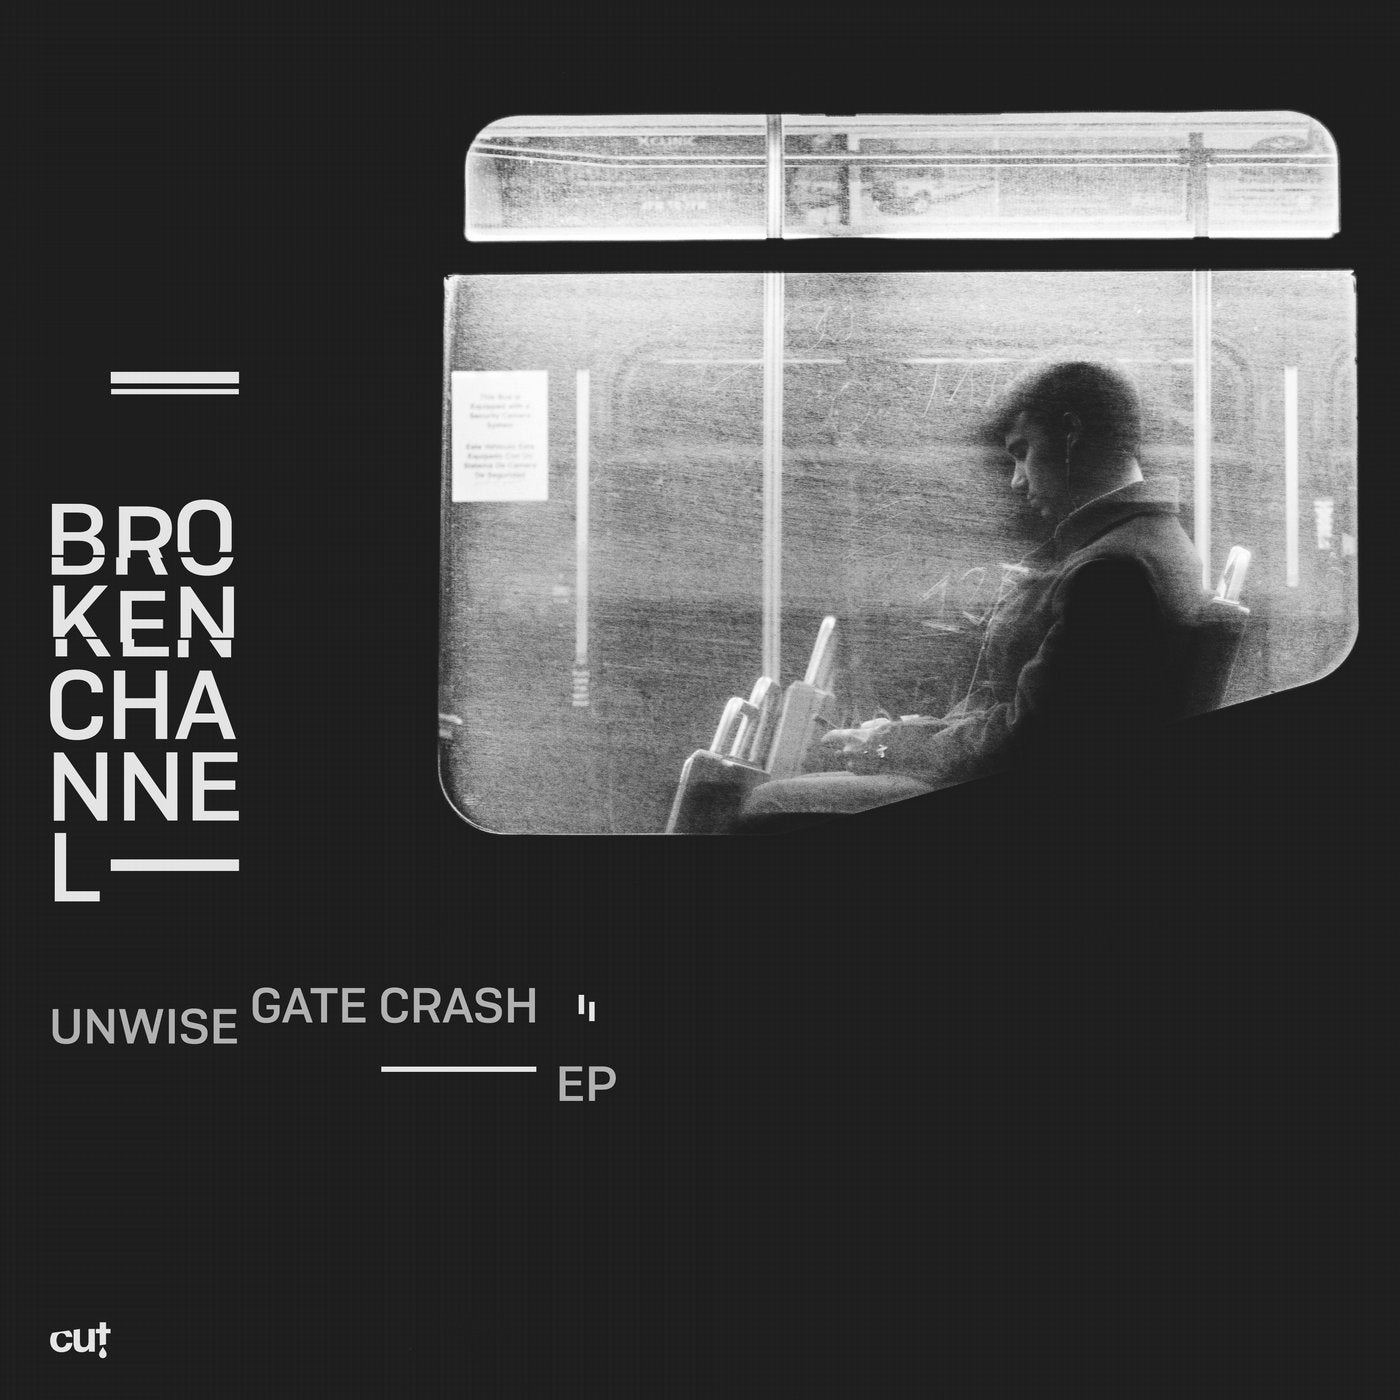 Unwise Gate Crash EP